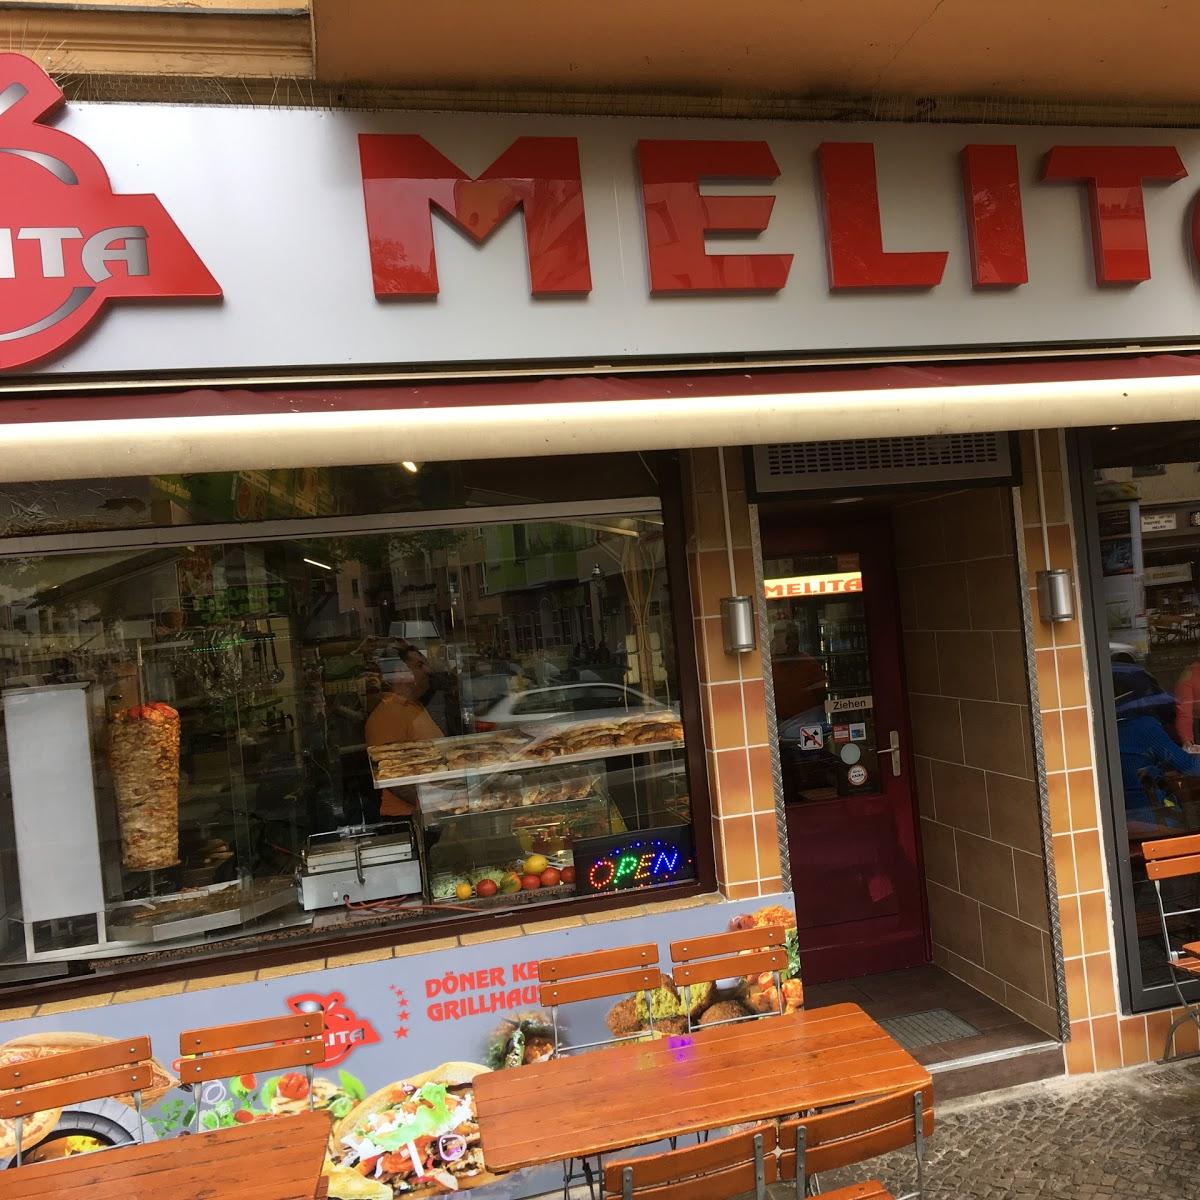 Restaurant "Melita" in Berlin